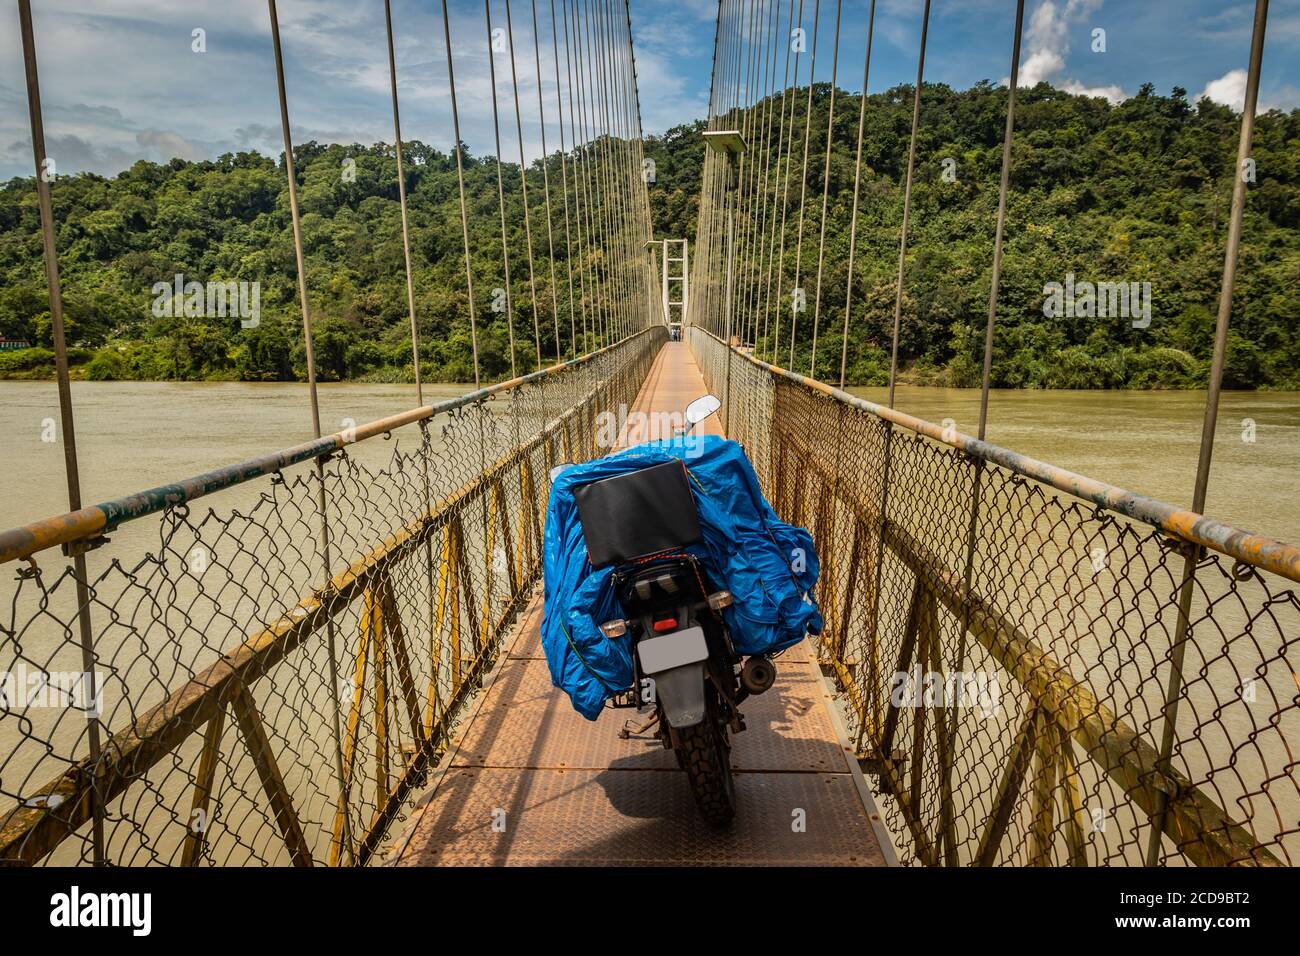 Solo Fahrer geladen Motorrad isoliert auf Hängebrücke Bild geparkt wird bei honnavar karnataka indien genommen. Es ist eine erstaunliche Erfahrung Moto zu fahren Stockfoto